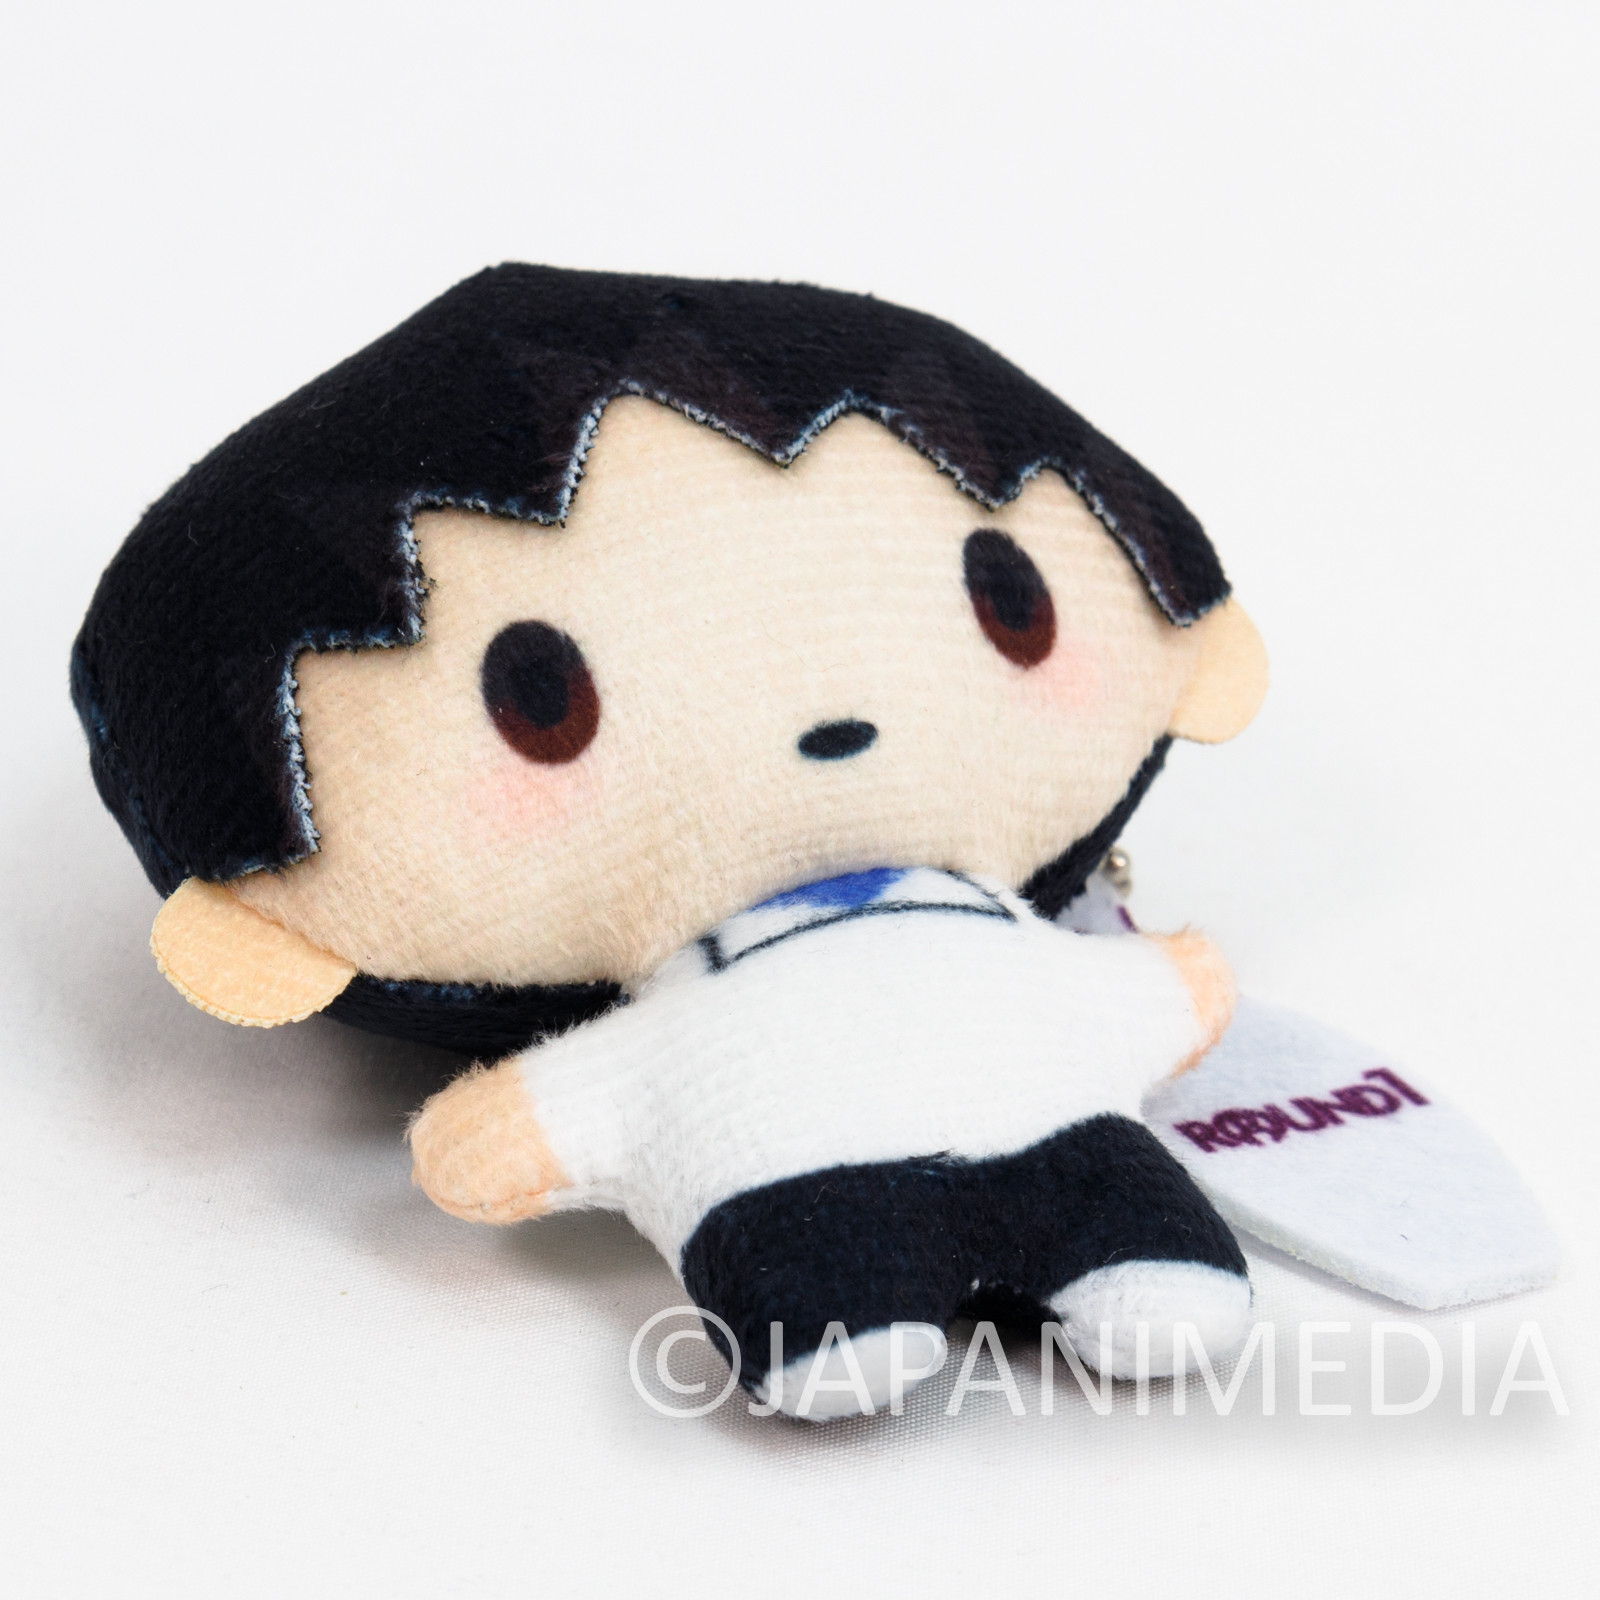 Shin Evangelion Shinji Ikari Mini Original Mascot Plush Doll Ballchain JAPAN